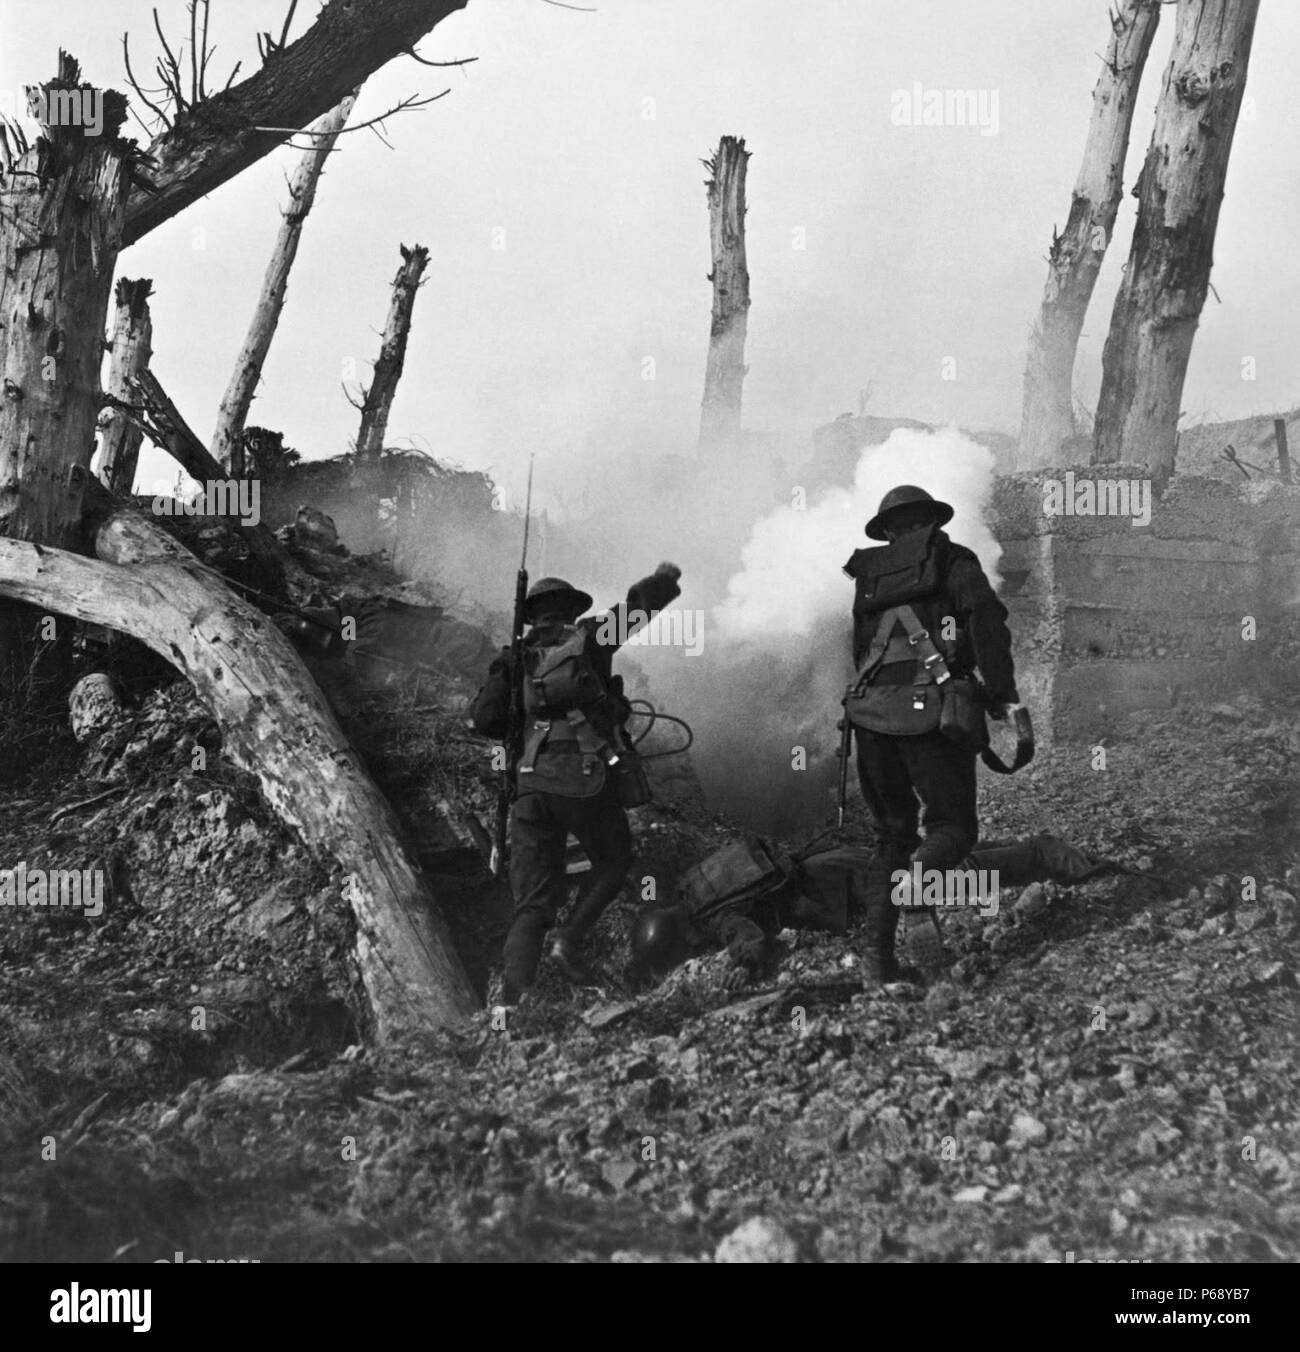 Photographie de soldats américains avançant sur un bunker allemand, au cours de la Première Guerre mondiale. Datée 1918 Banque D'Images